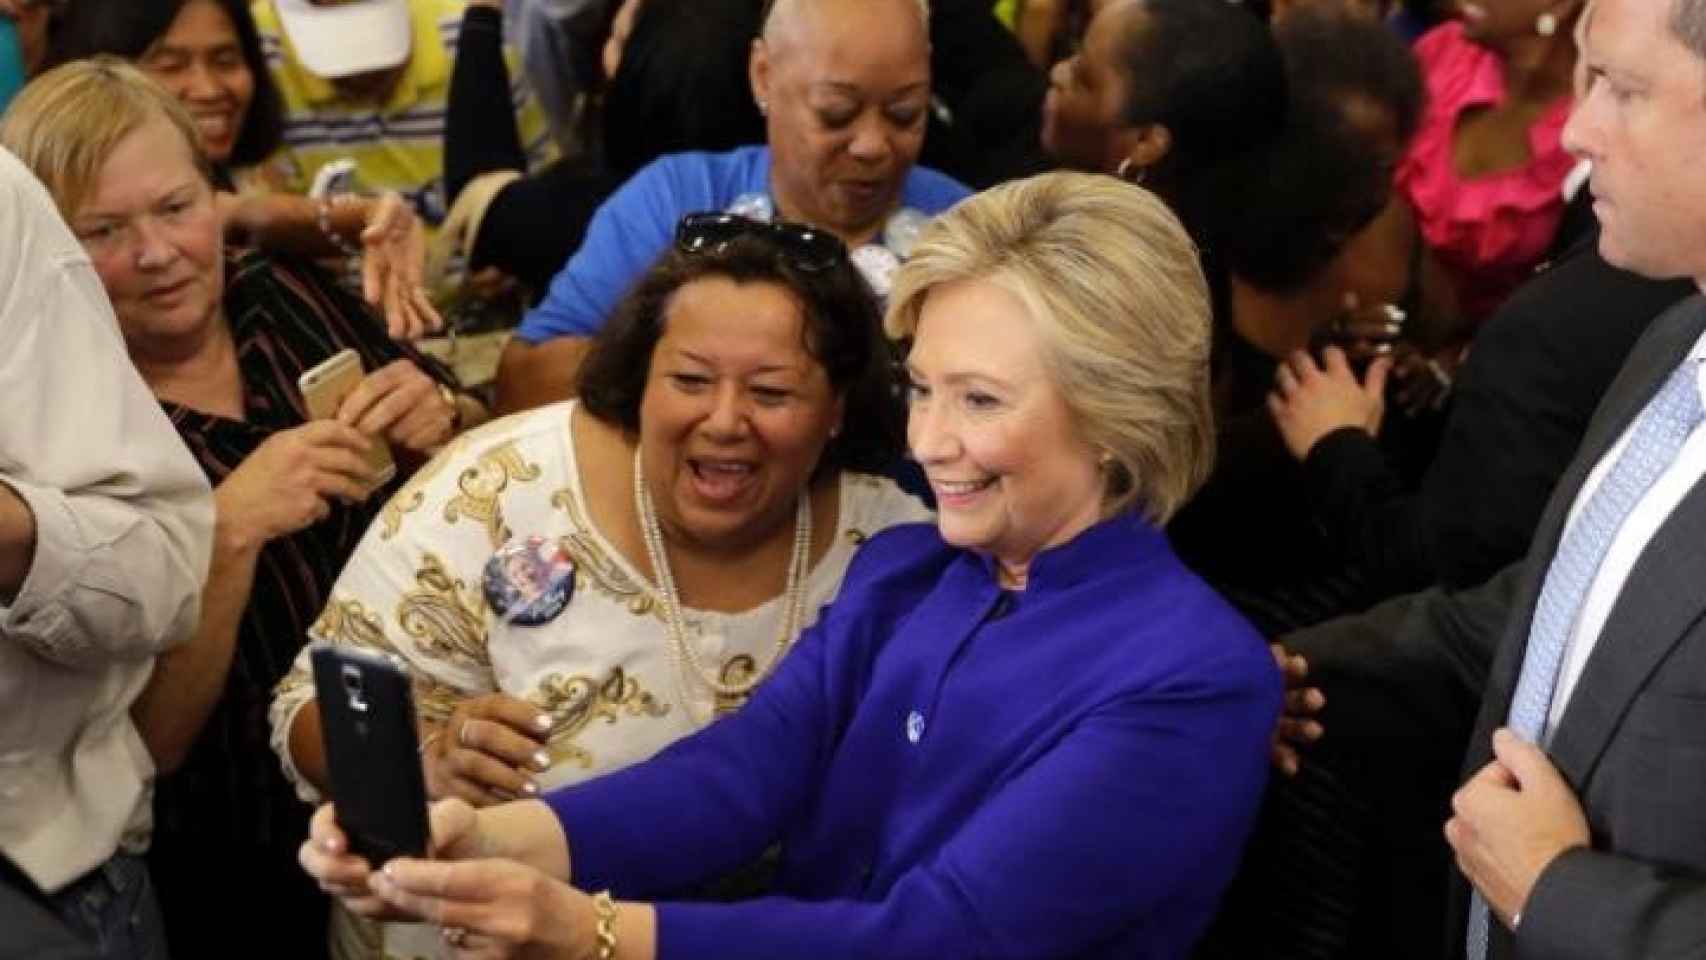 Hillary en plena campaña, se hace una foto junto al público.